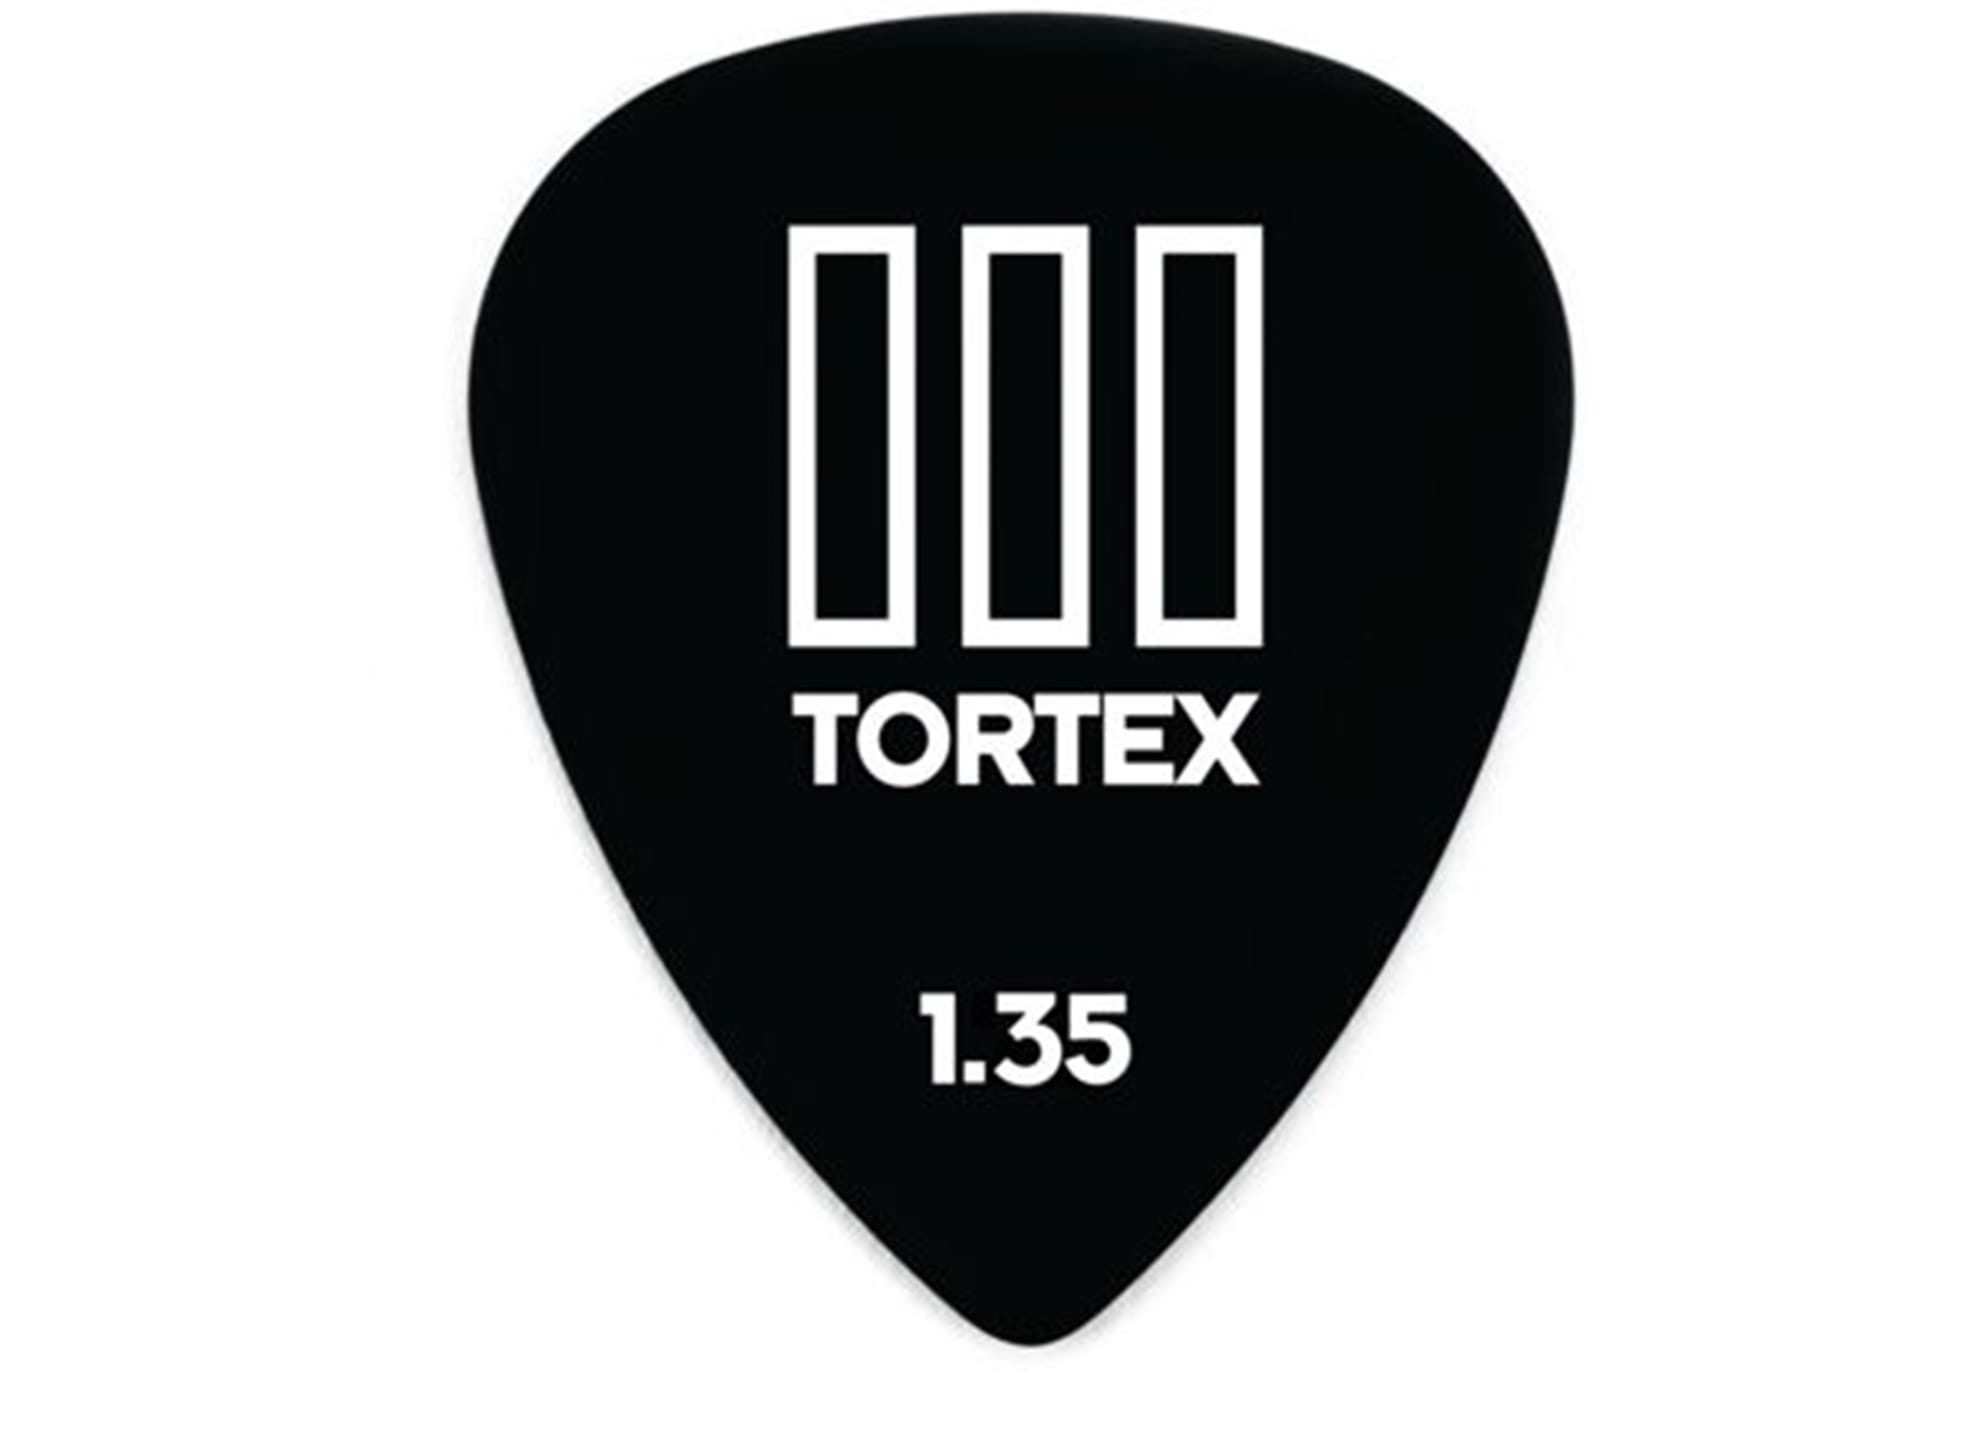 Tortex TIII 1.35mm (10-pack)